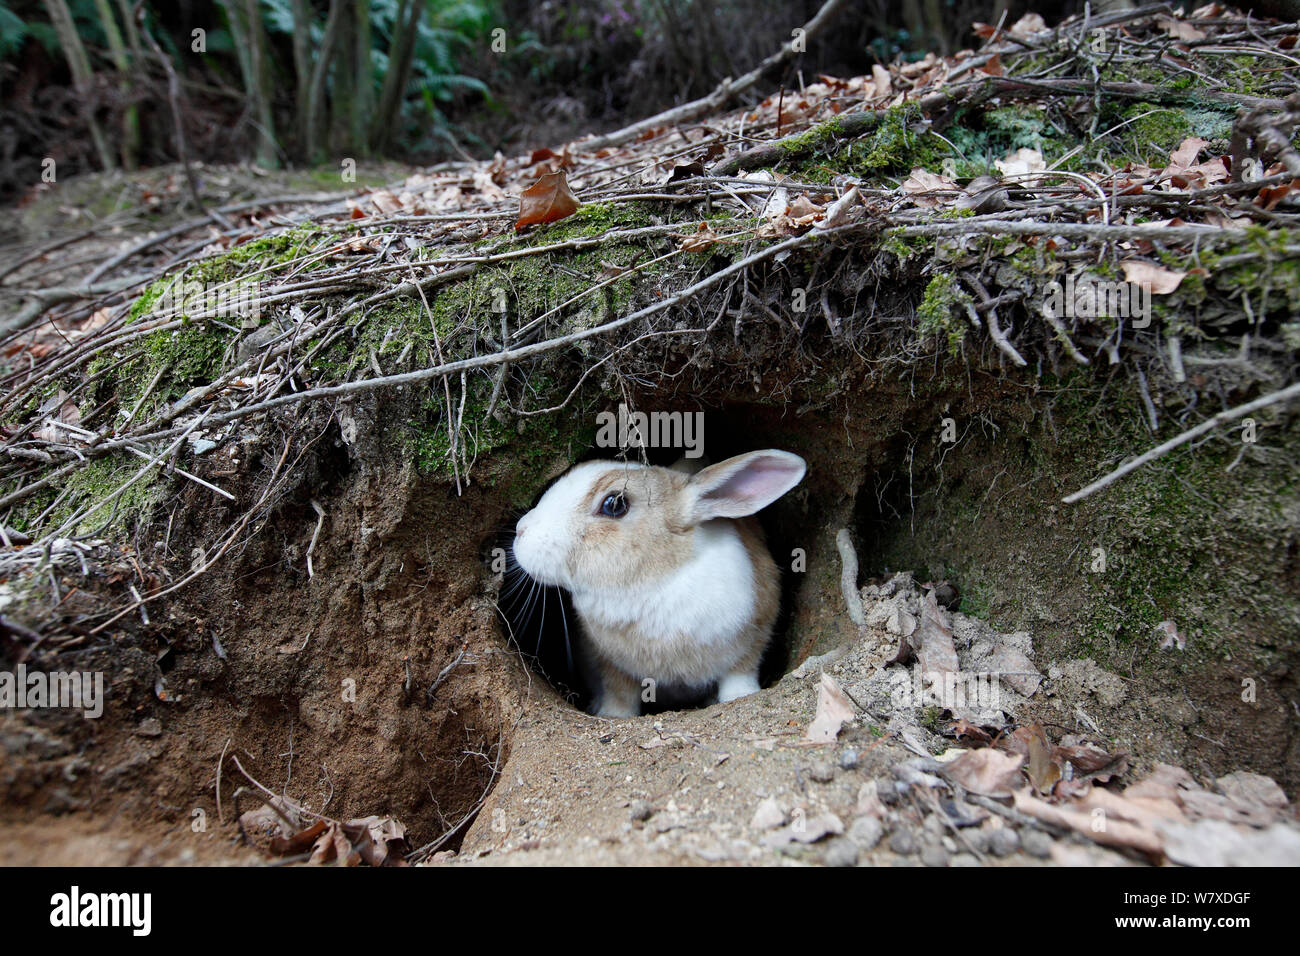 Les sauvages lapin (Oryctolagus cuniculus) de warren, Okunojima Island, également connu sous le nom de Rabbit Island, Hiroshima, Japon. Banque D'Images